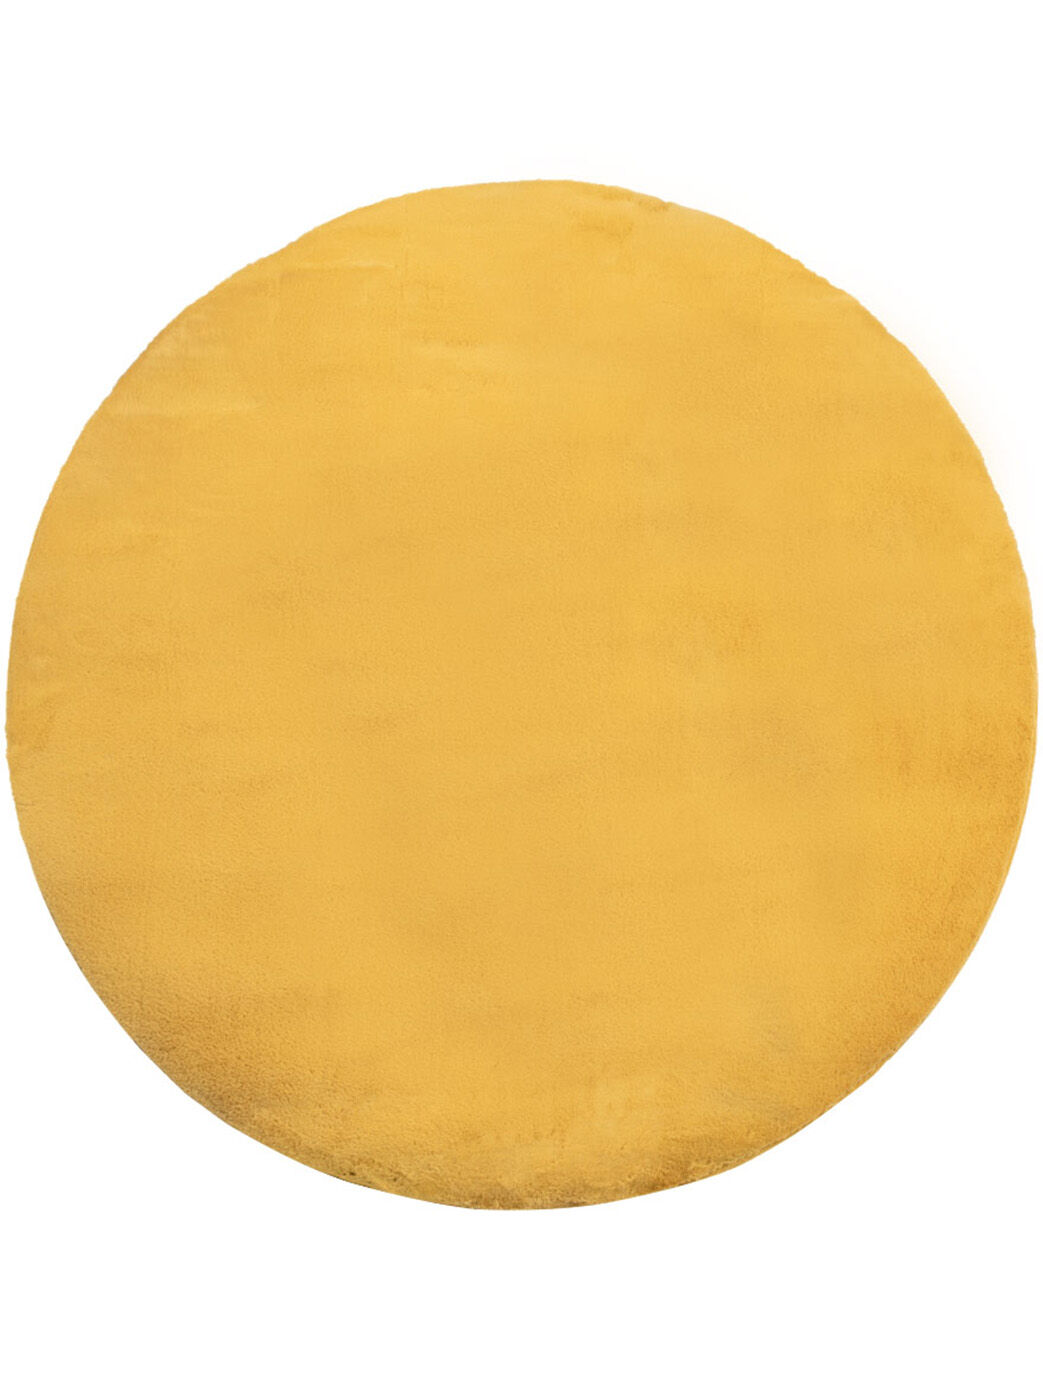 Flauschiger Teppich Mona 114 Gelb Rund